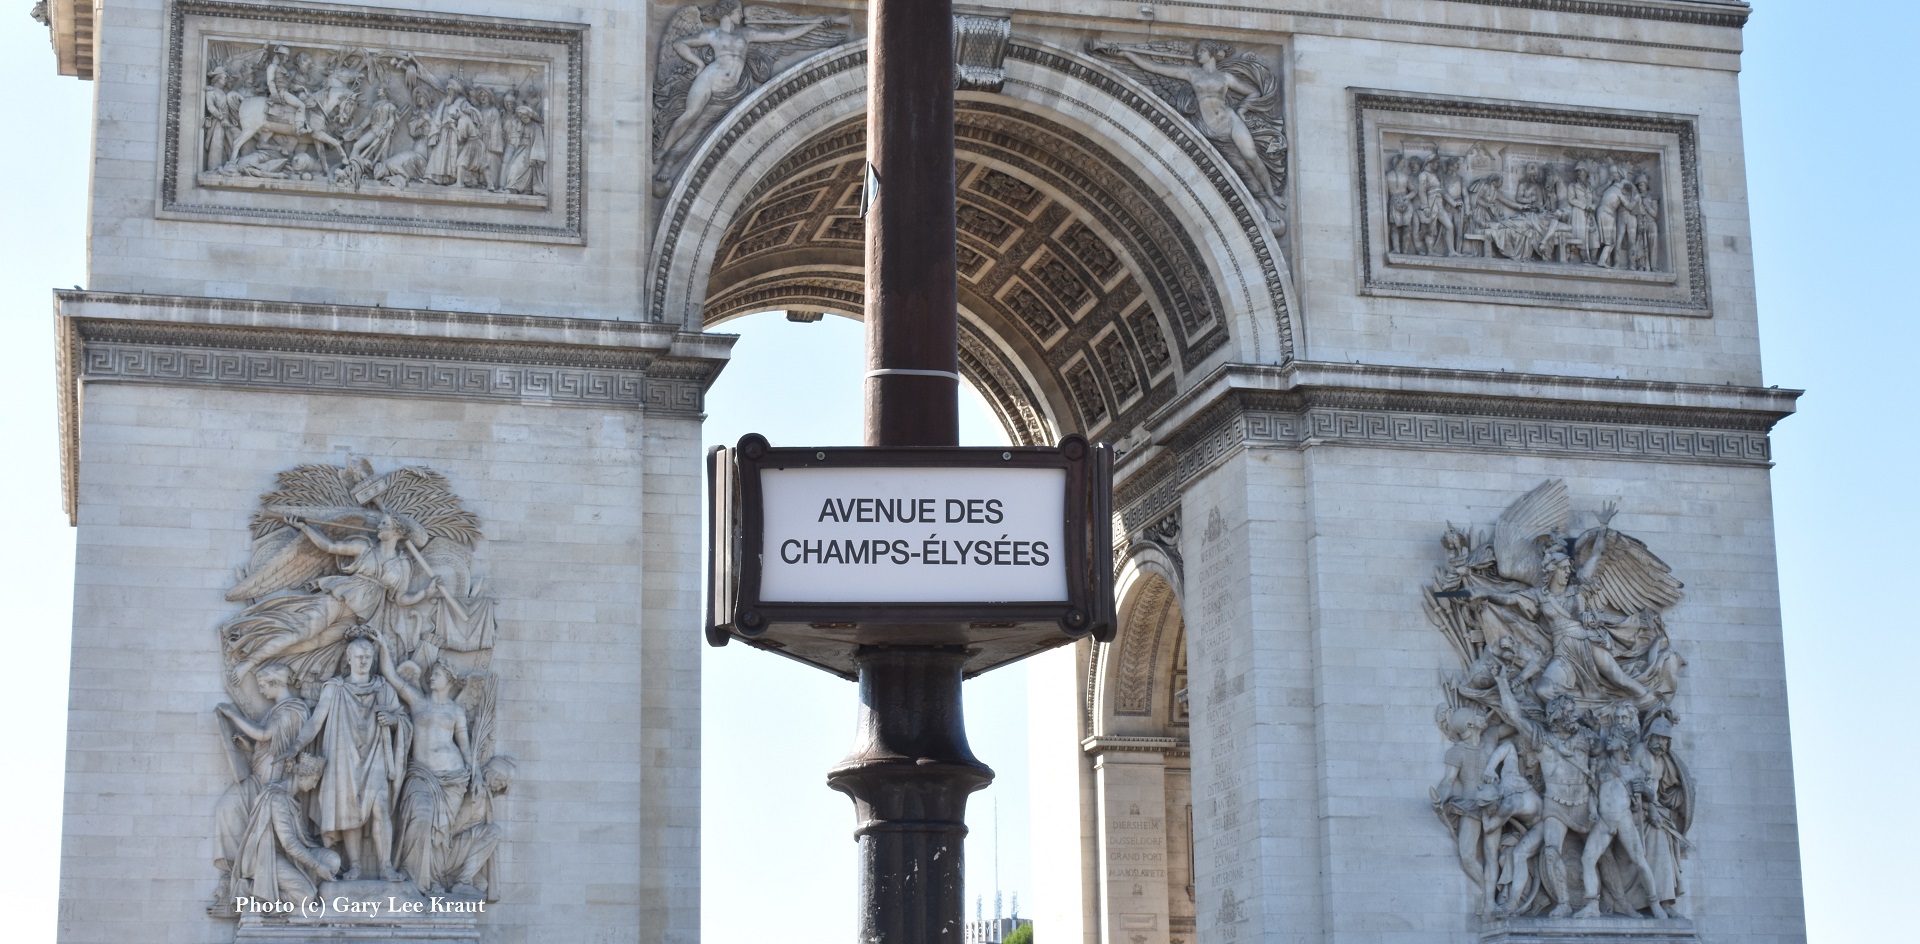 Entering the Avenue des Champs-Elysées » Paris audio guide app » VoiceMap